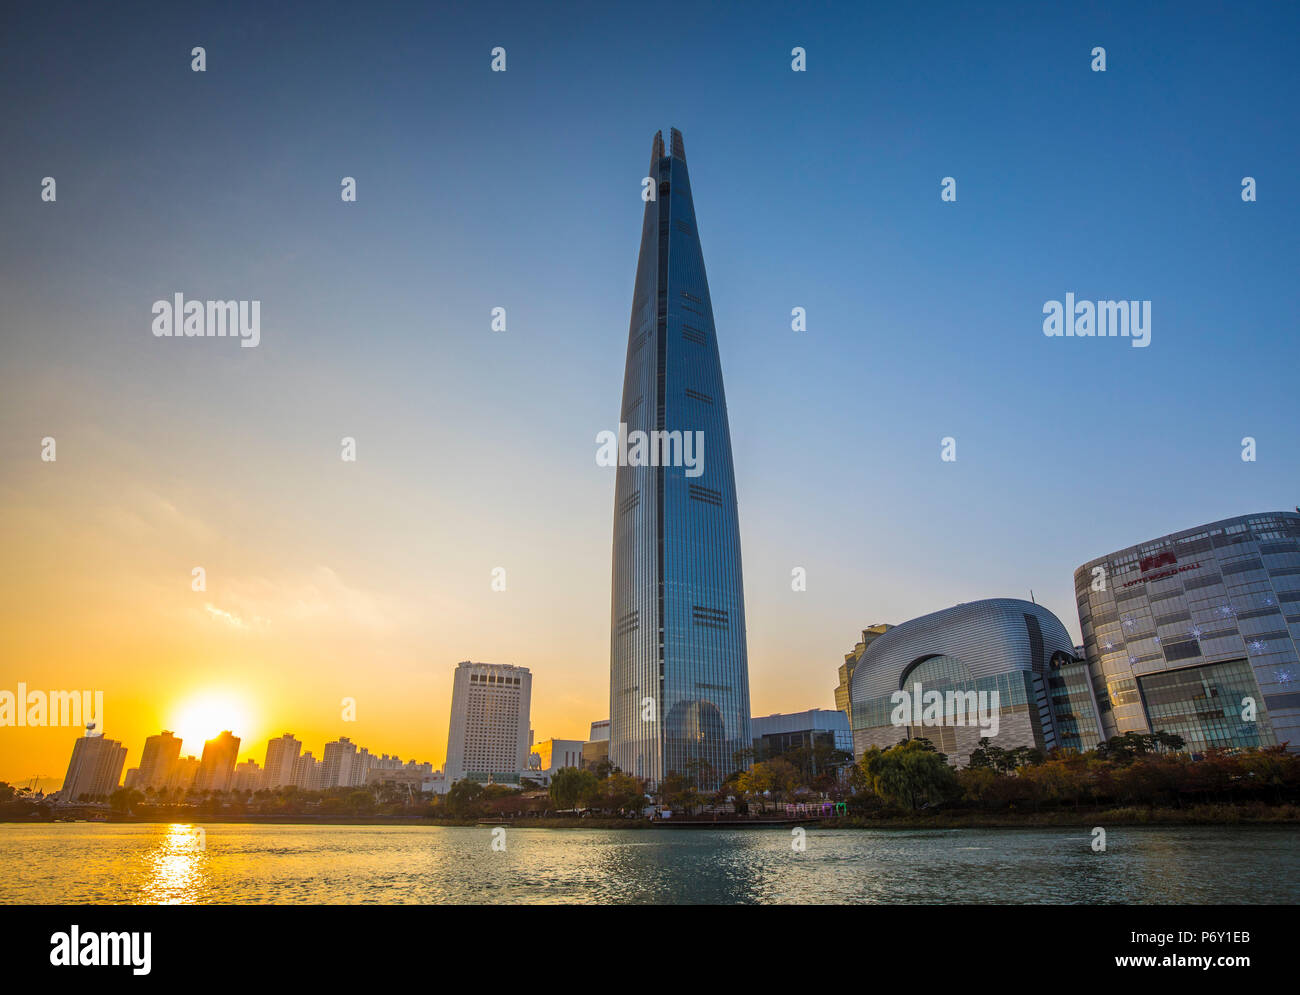 Lotte Tower (555m de gratte-ciel, 5ème bâtiment le plus haut du monde lorsqu'il sera terminé en 2016), Séoul, Corée du Sud Banque D'Images